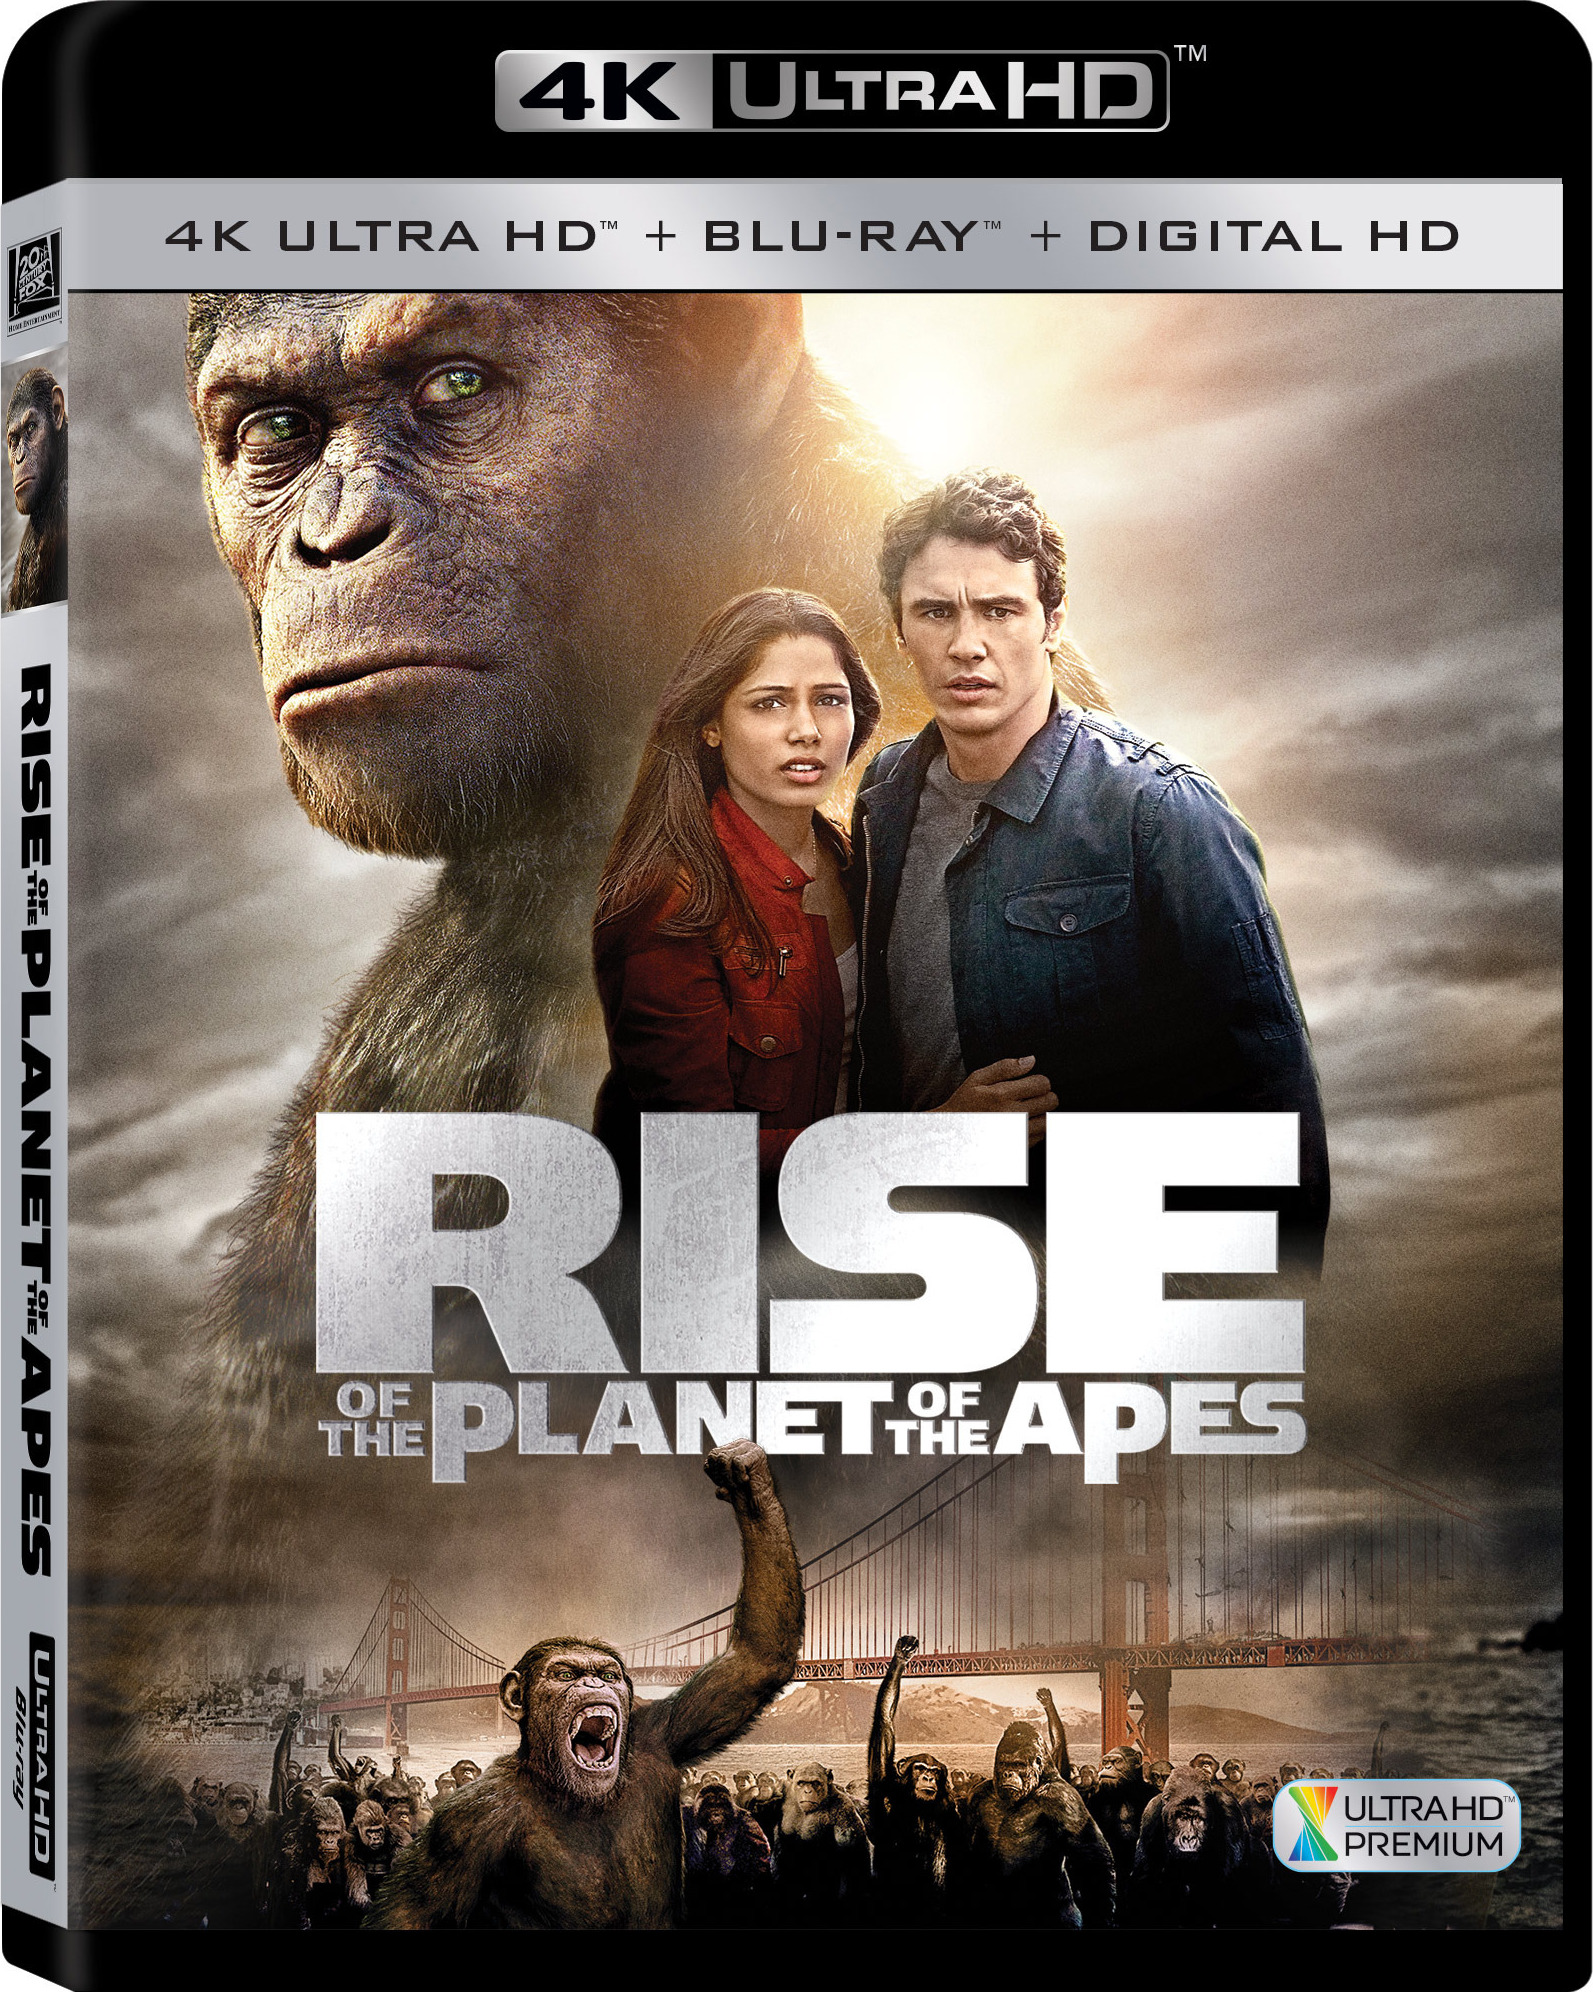 [猩球崛起1].Rise.of.the.Planet.of.the.Apes.2011.UHD.BluRay.2160p.HEVC.DTS-HD.MA.5.1-SUPERSIZE     36.01G-1.jpg